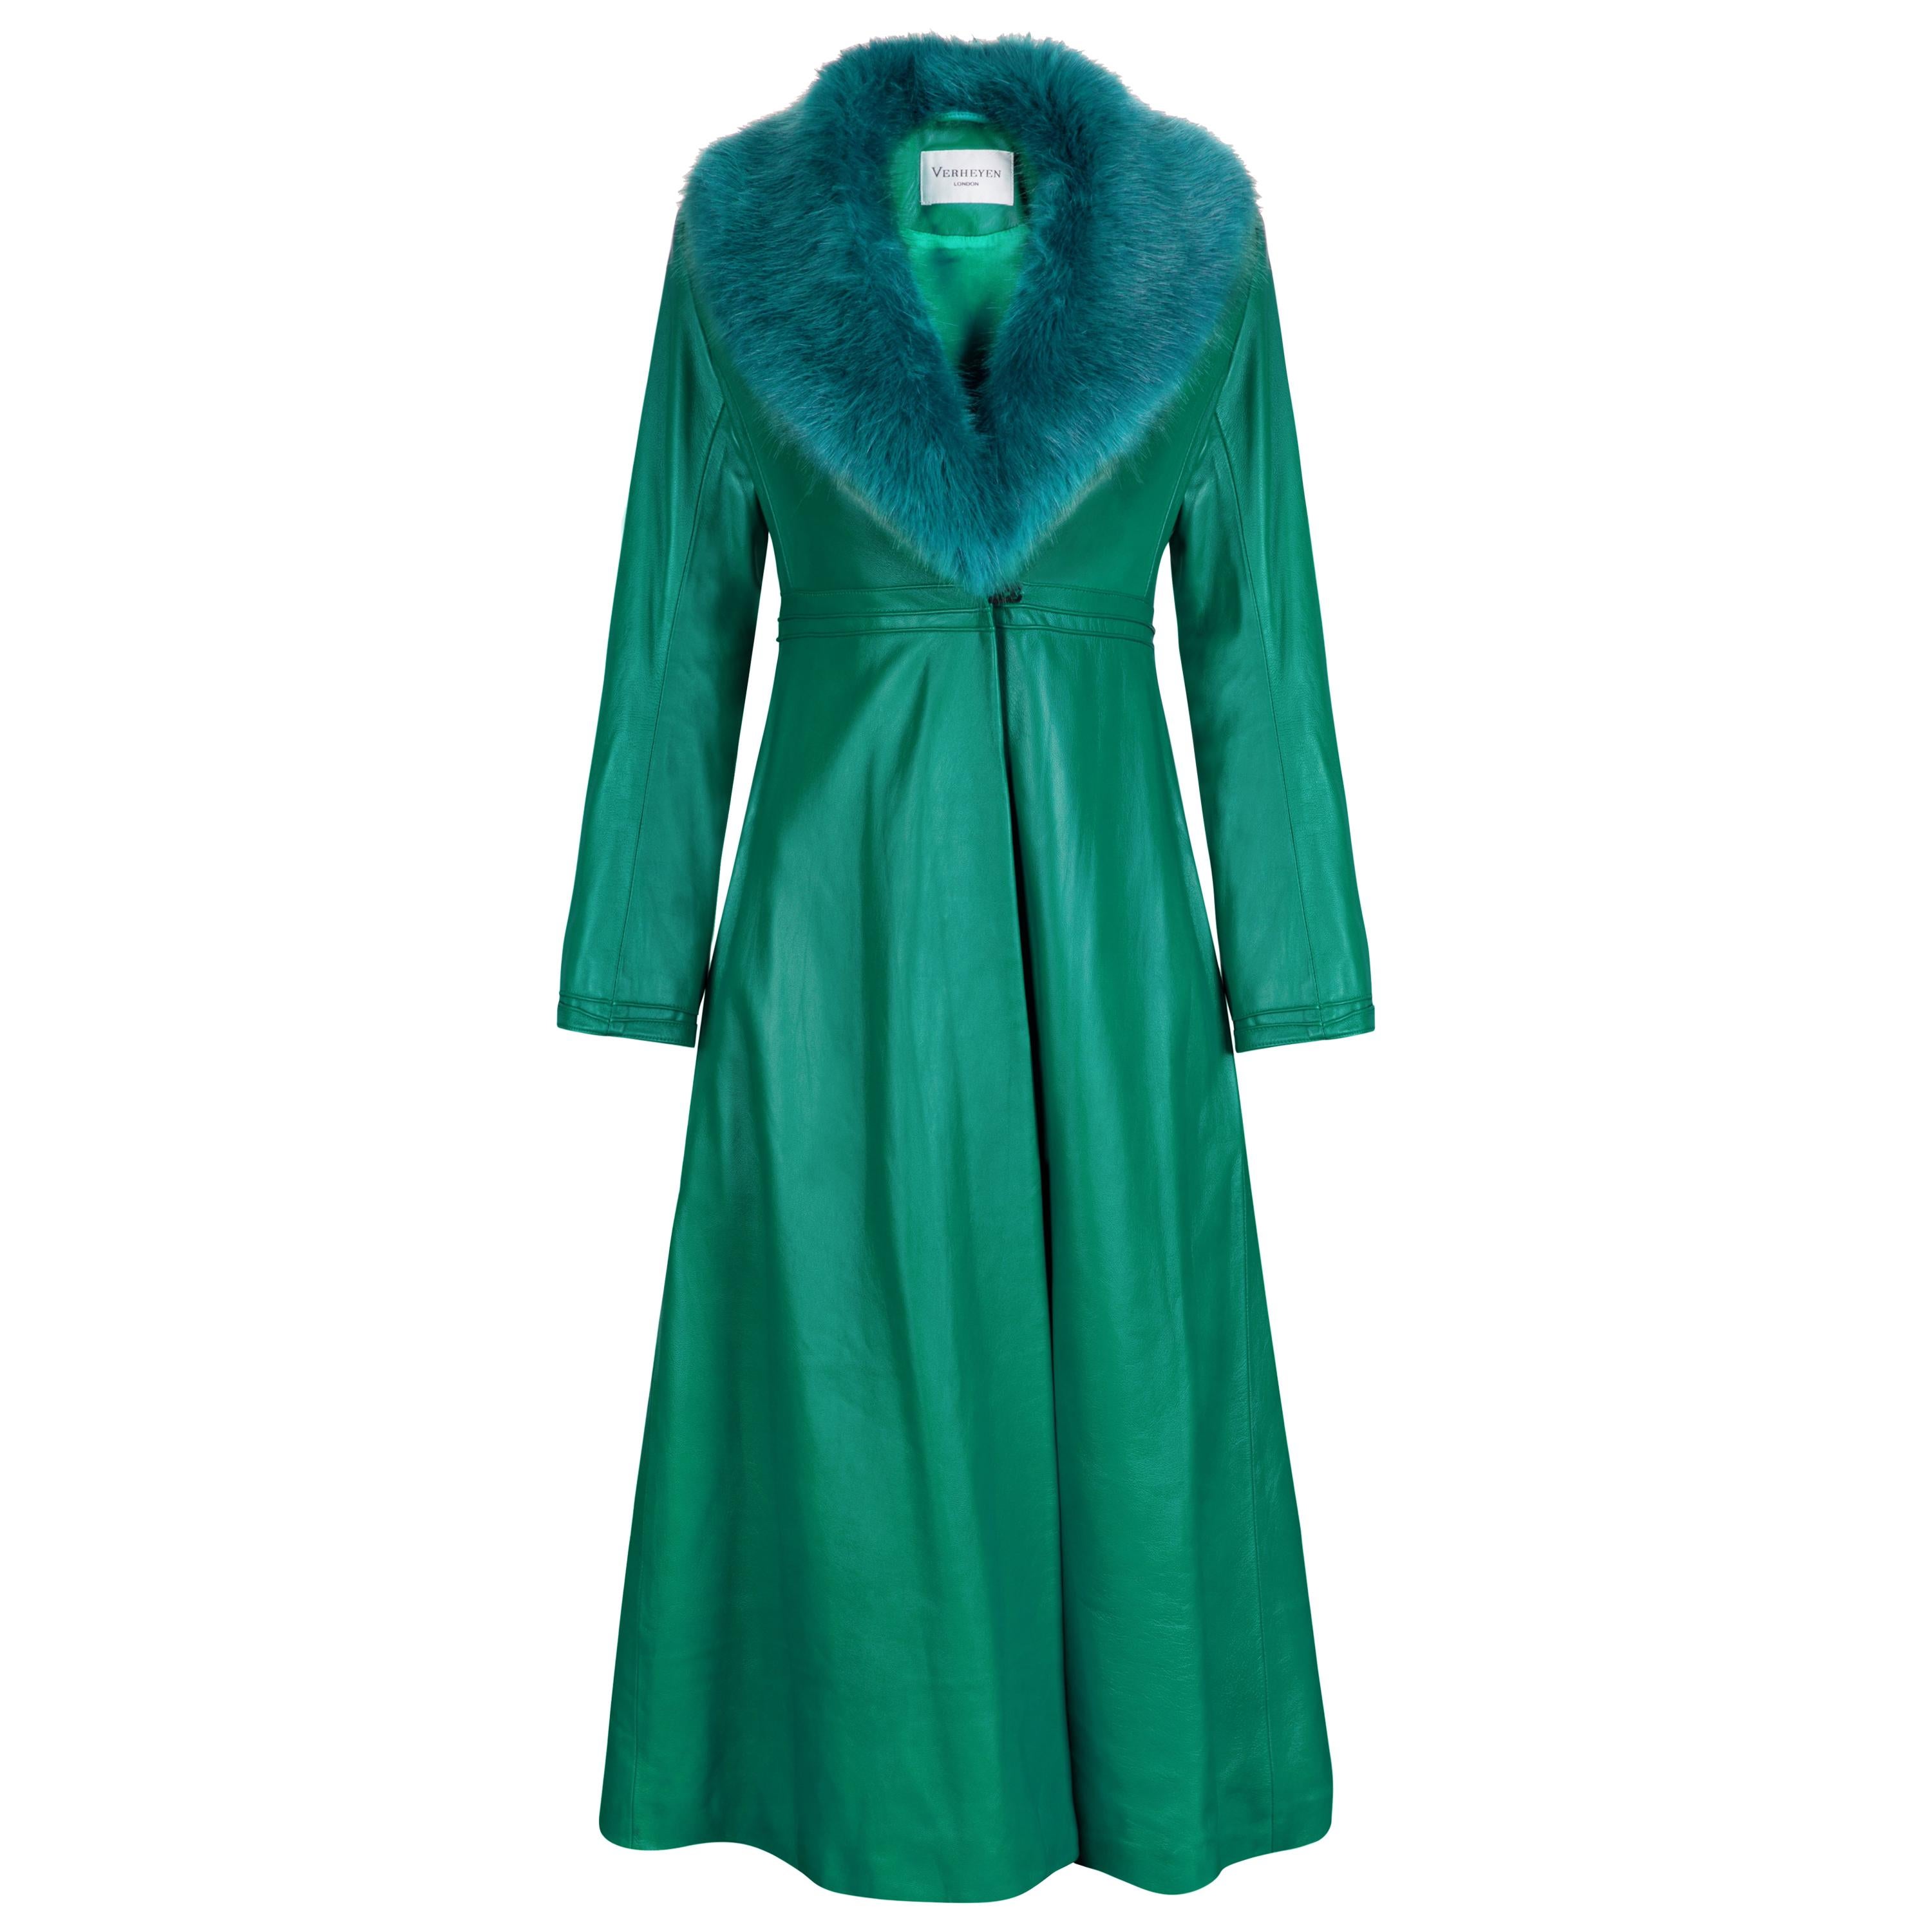 Manteau en cuir Verheyen London Edward en fausse fourrure verte et verte - Taille 8 Royaume-Uni 